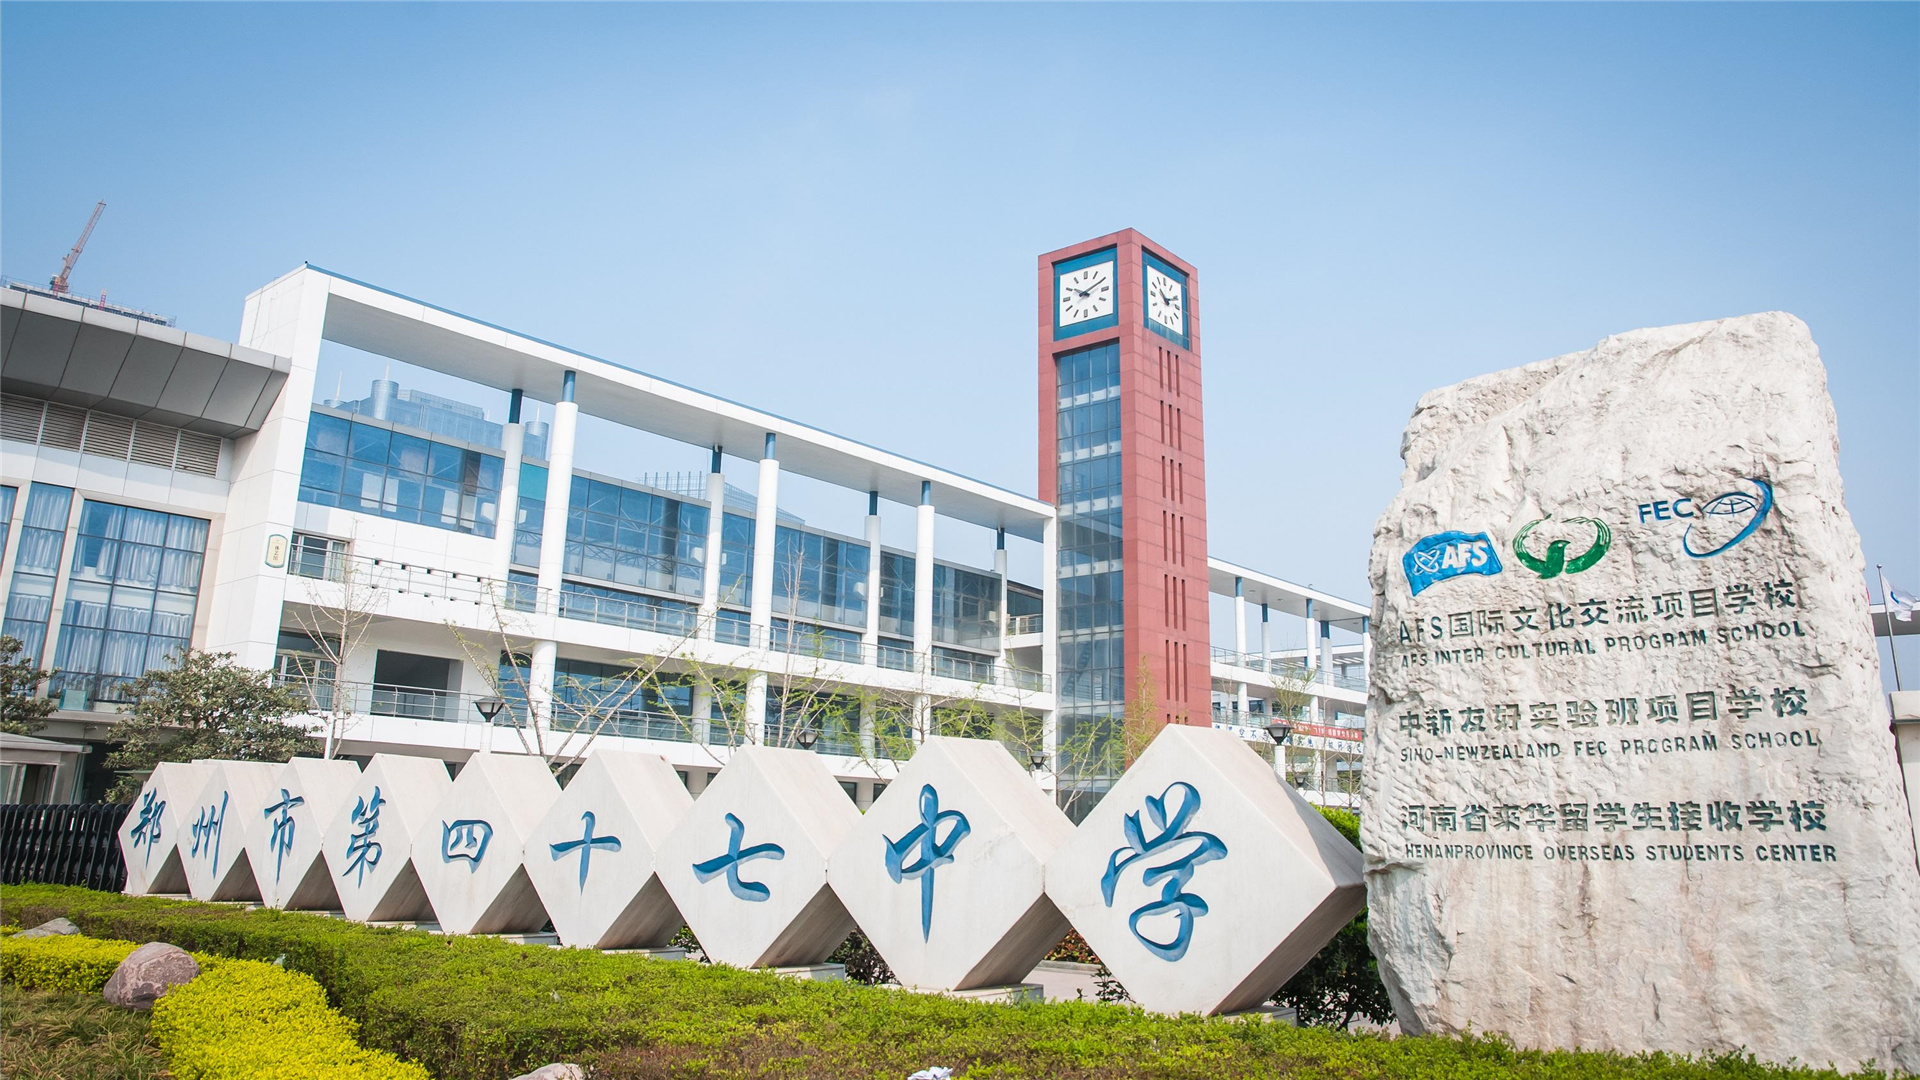 郑州市私立高中图片